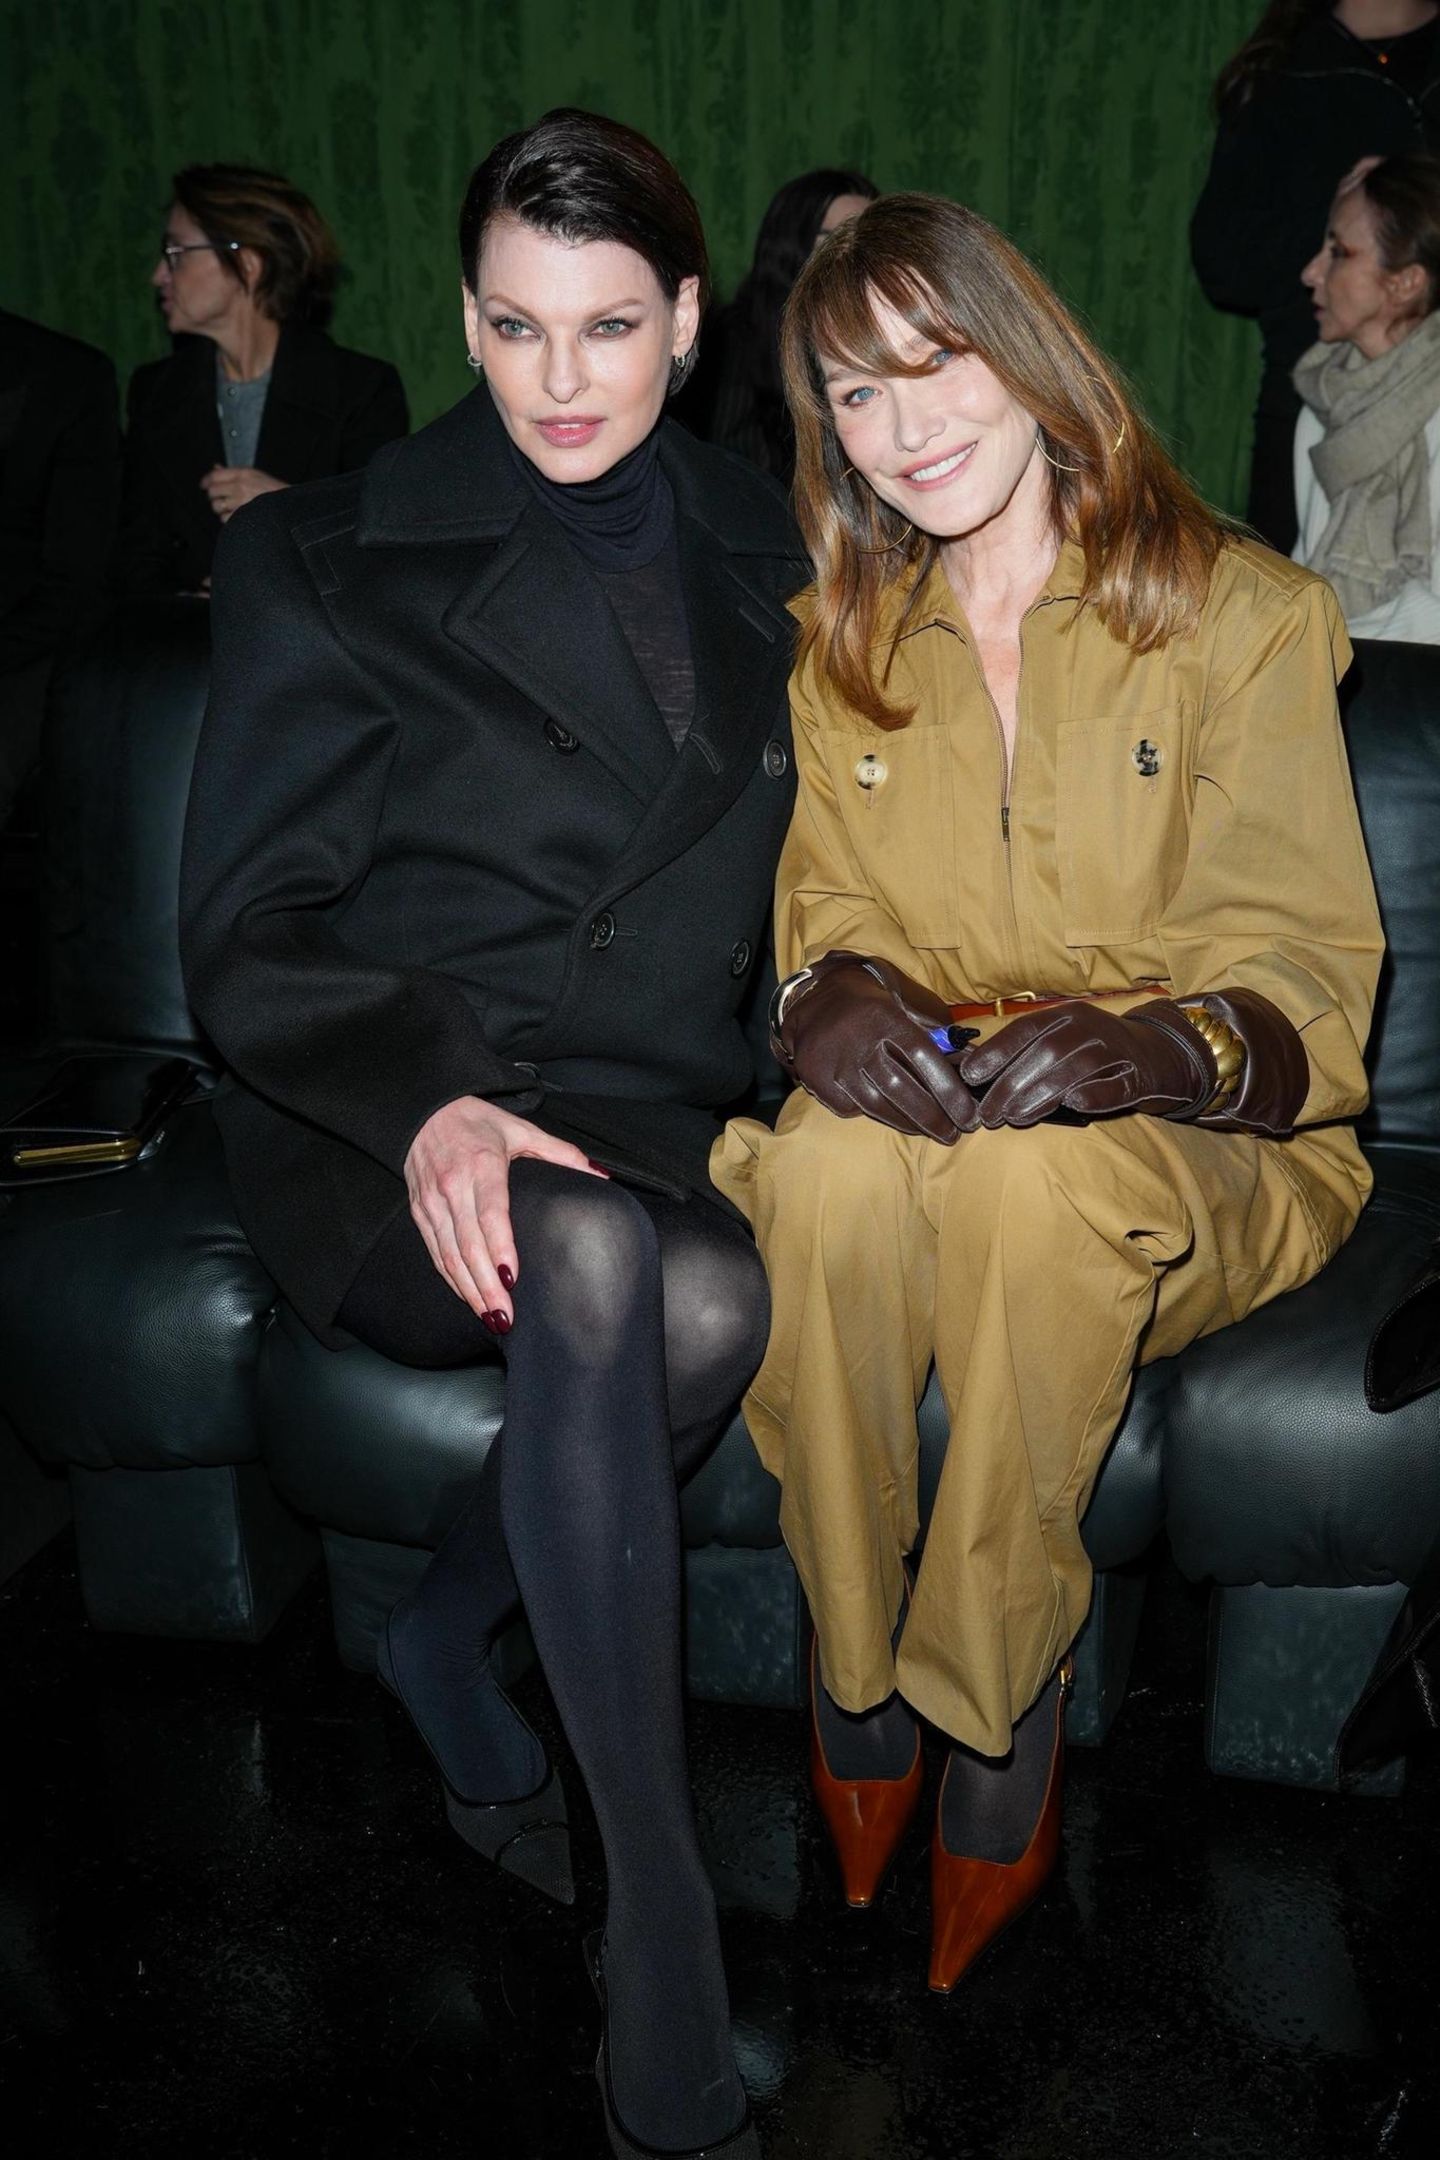 Mit Kate Moss haben noch zwei Supermodels den Weg in die Front Row von Saint Laurent gefunden: Linda Evangelista und Carla Bruni-Sarkozy haben es sich auf dem Ledersofa gemütlich gemacht.